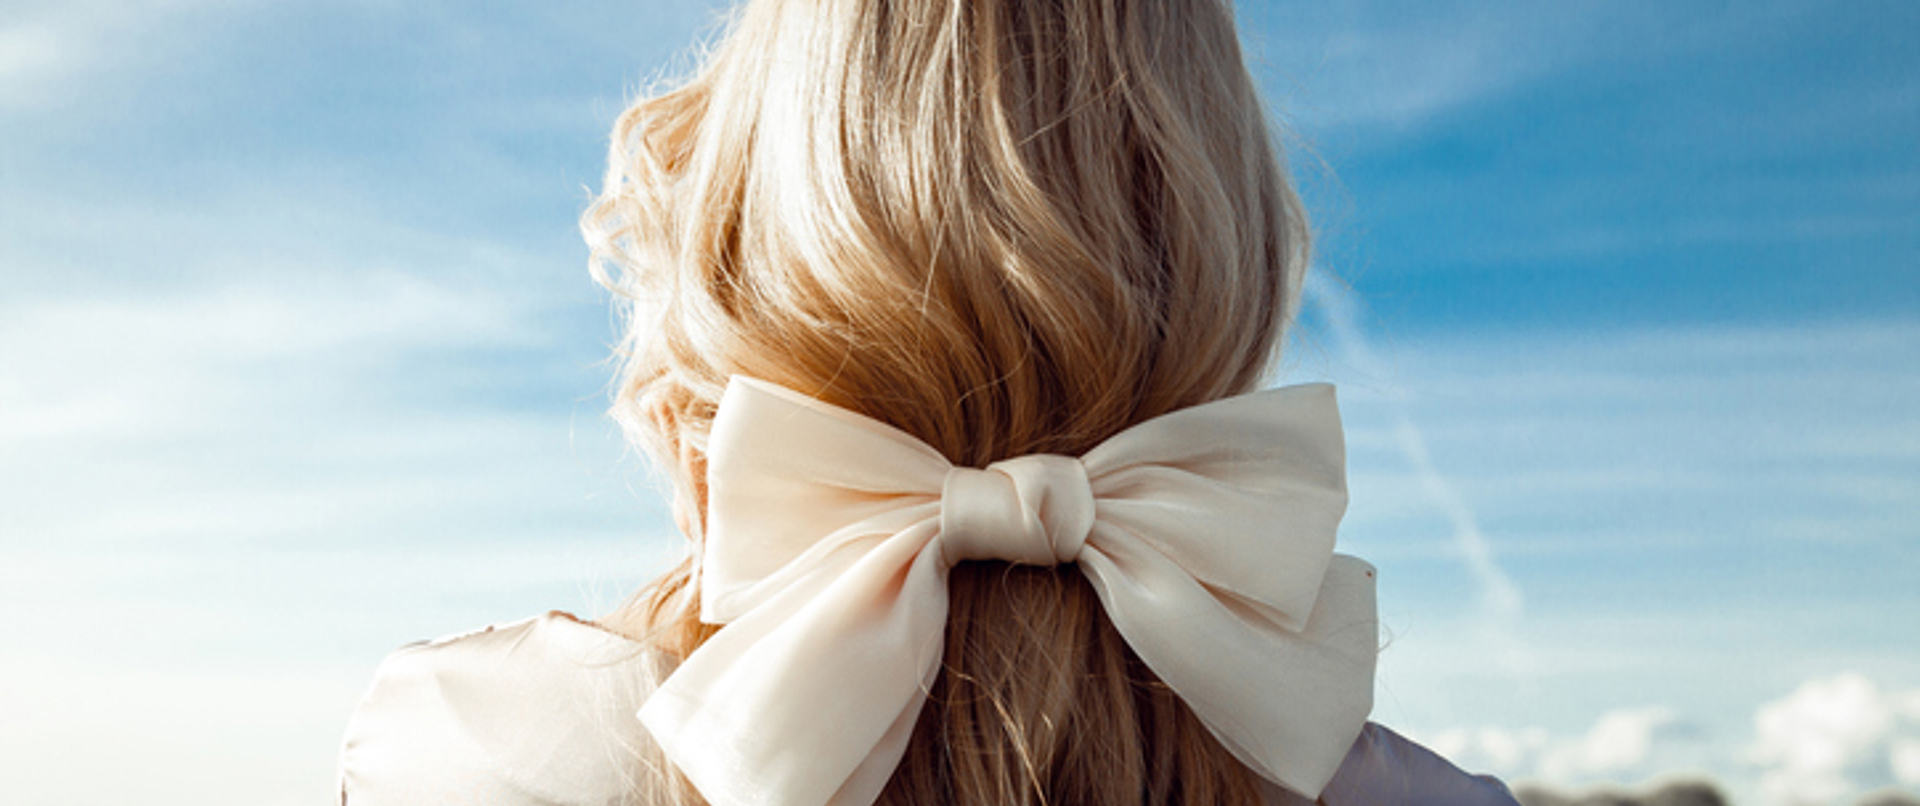 Saçlarda Romantik Rüzgarlar: Retro Fiyonklarla 3 Basit Saç Modeli